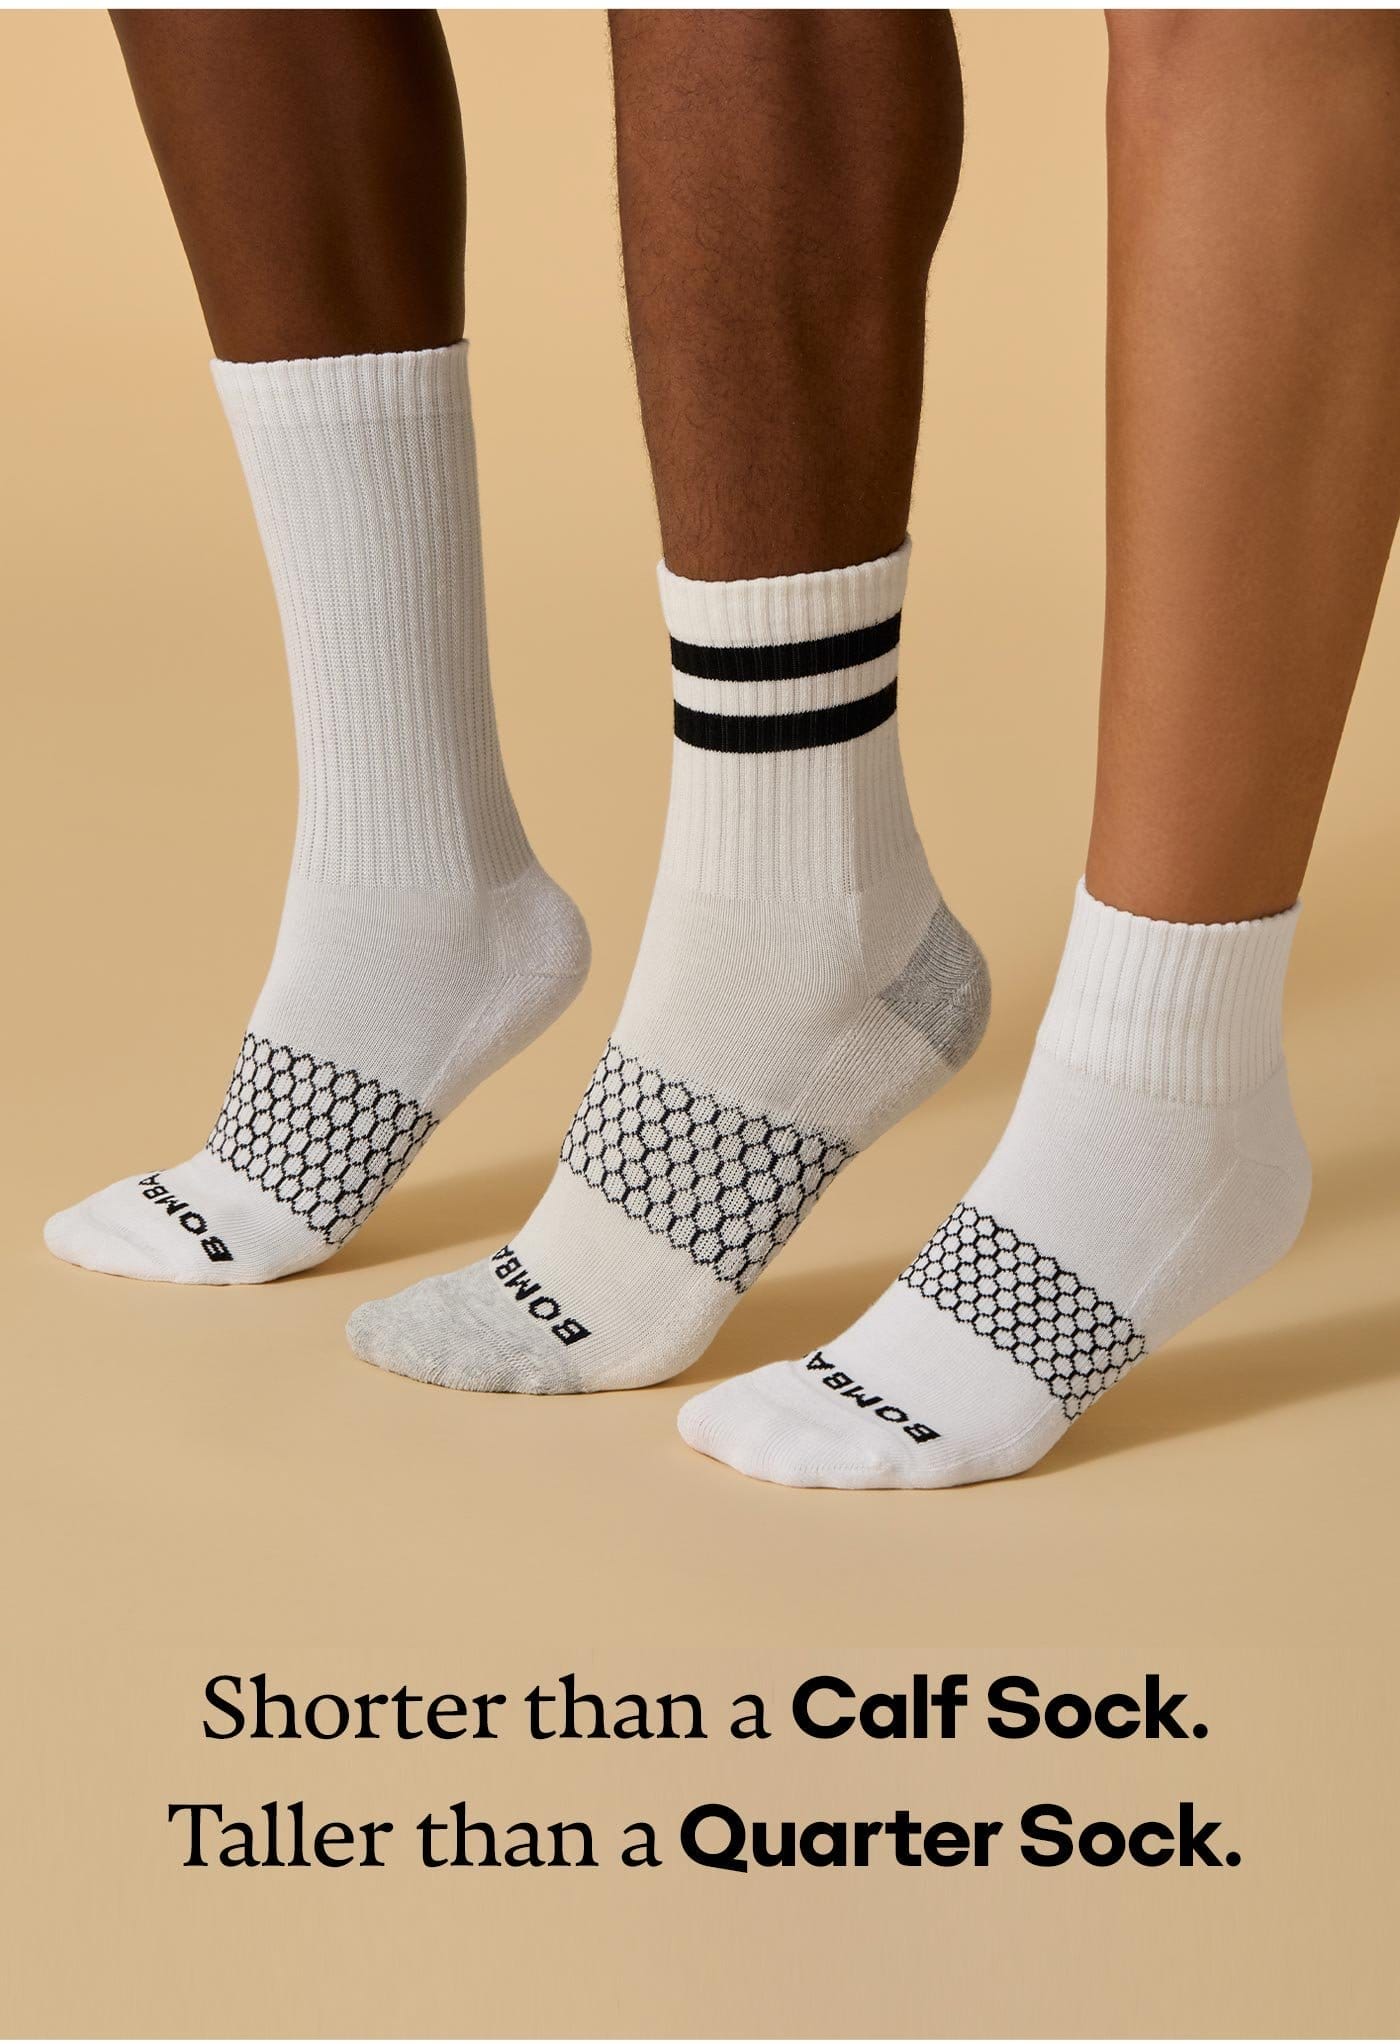 Shorter than a Calf Sock. Taller than a Quarter Sock.